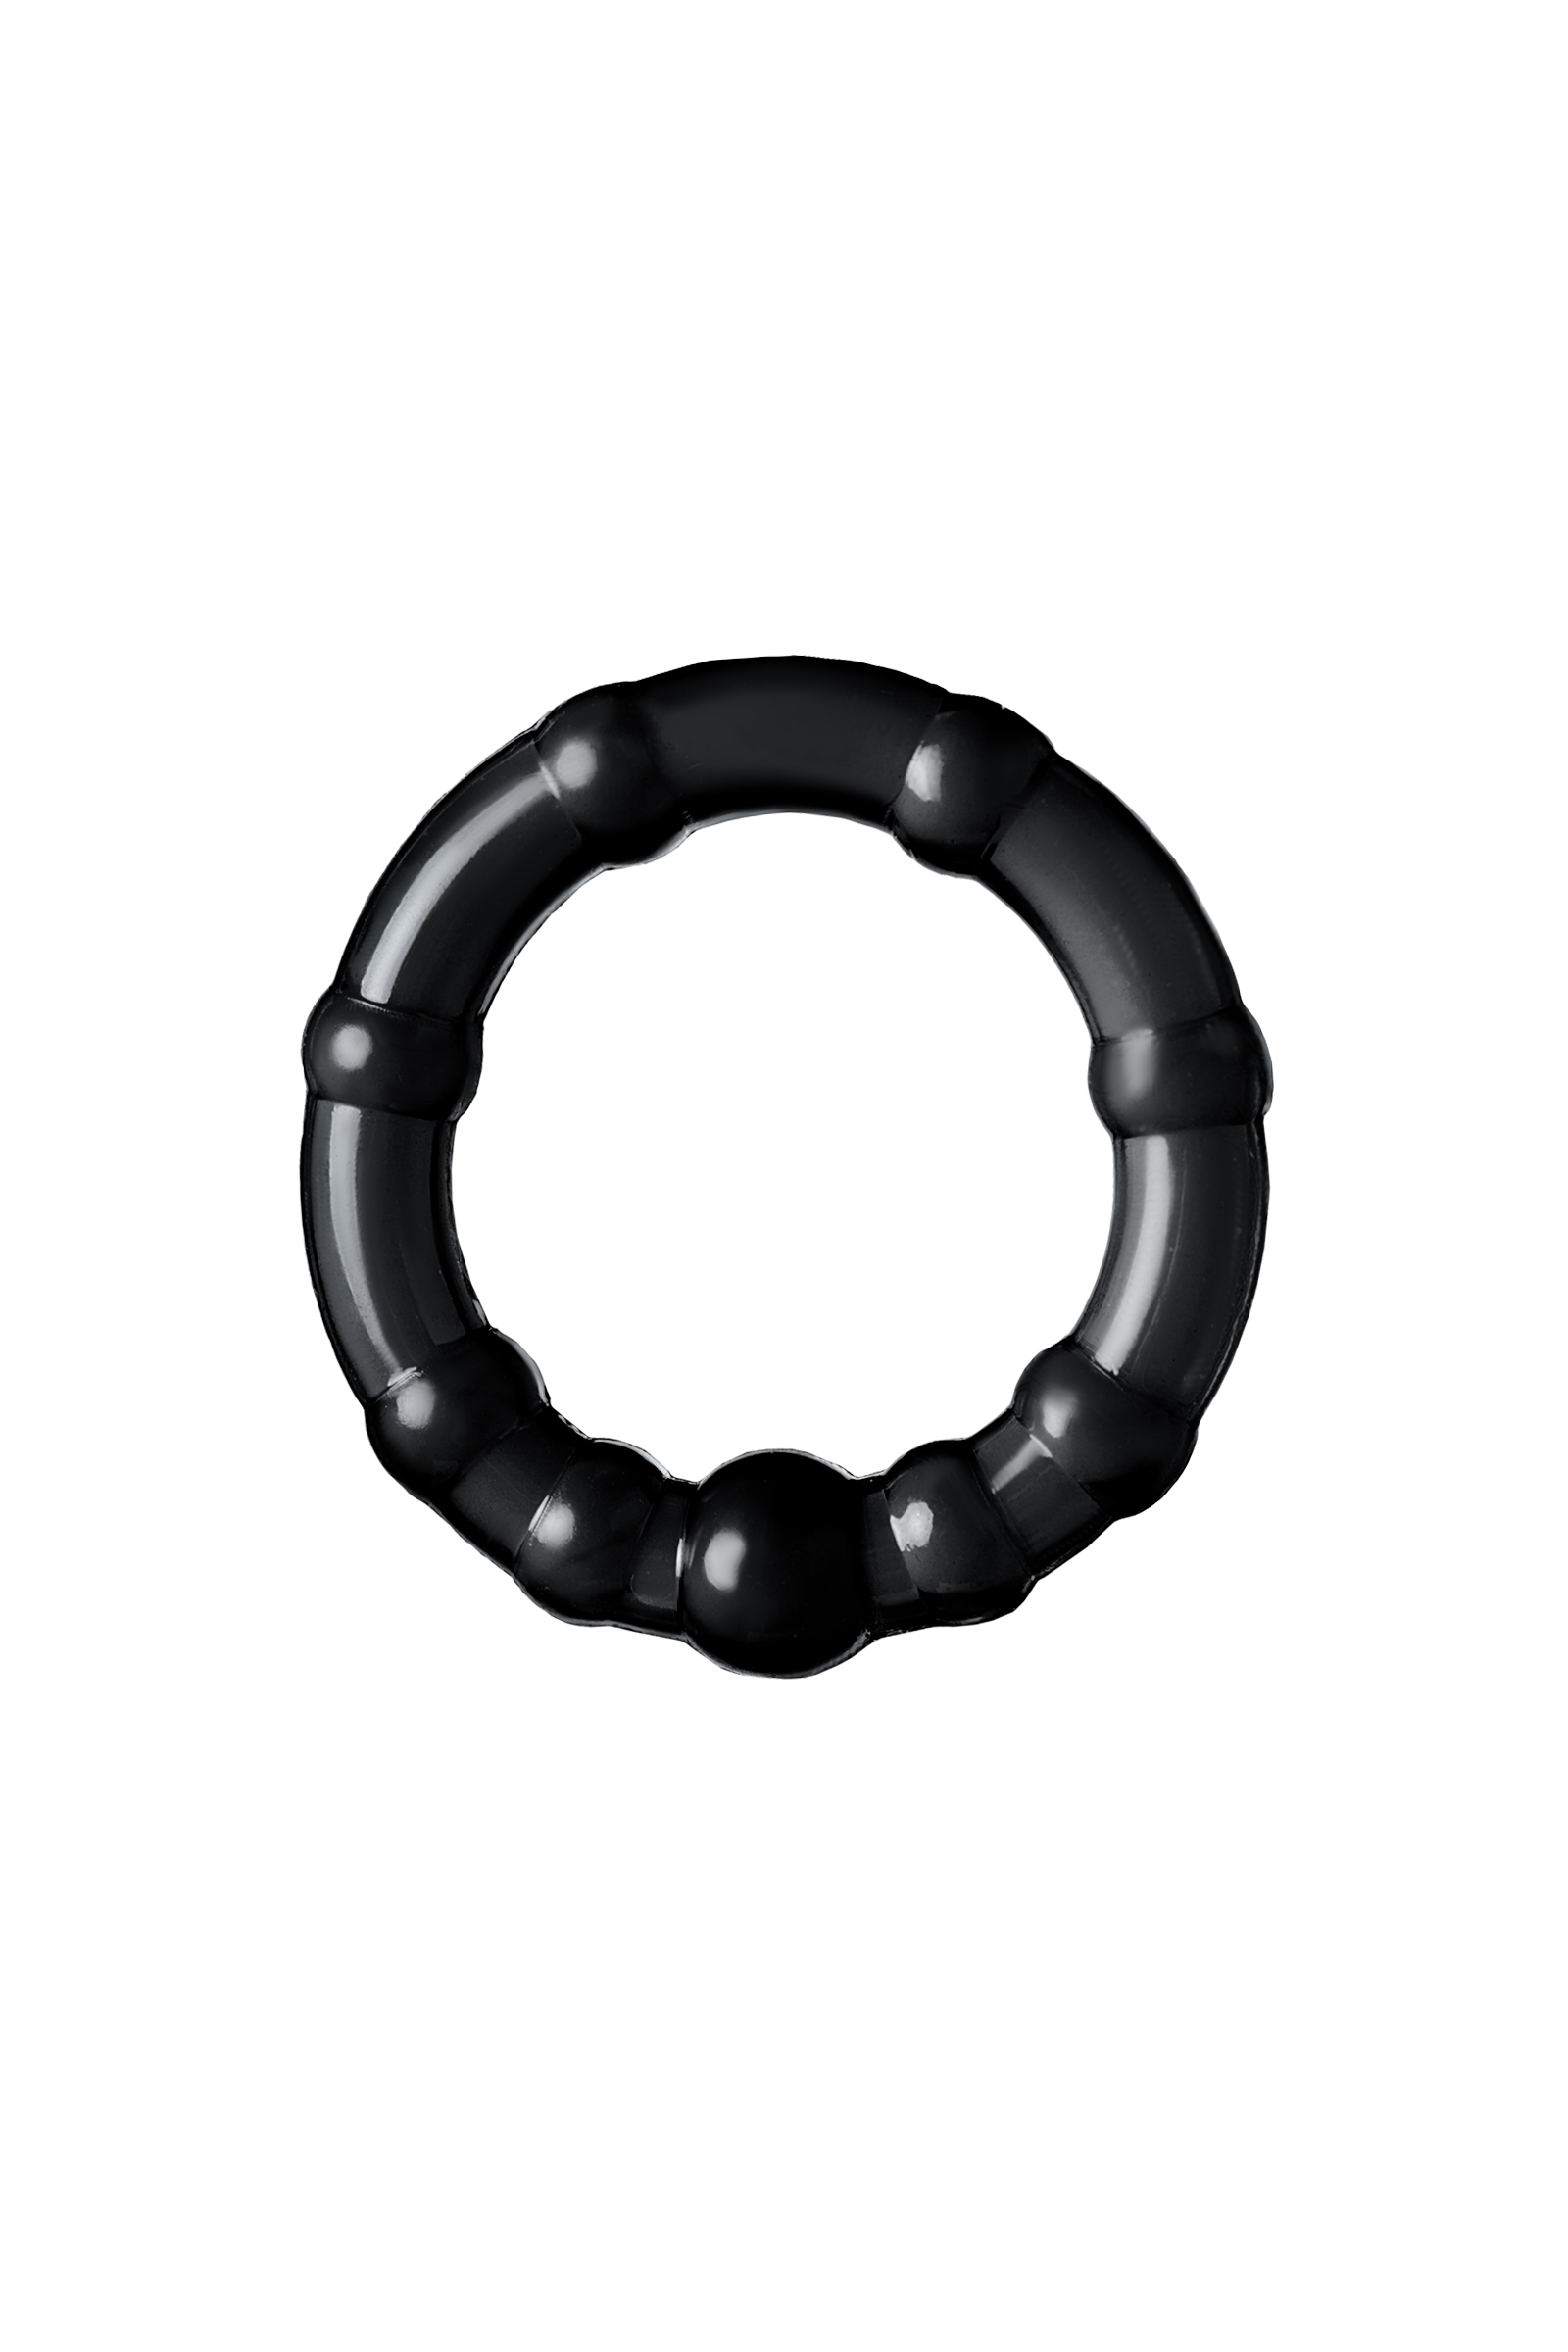 Набор колец Toyfa A-toys 769004-5 черные 3,5/3/2 см